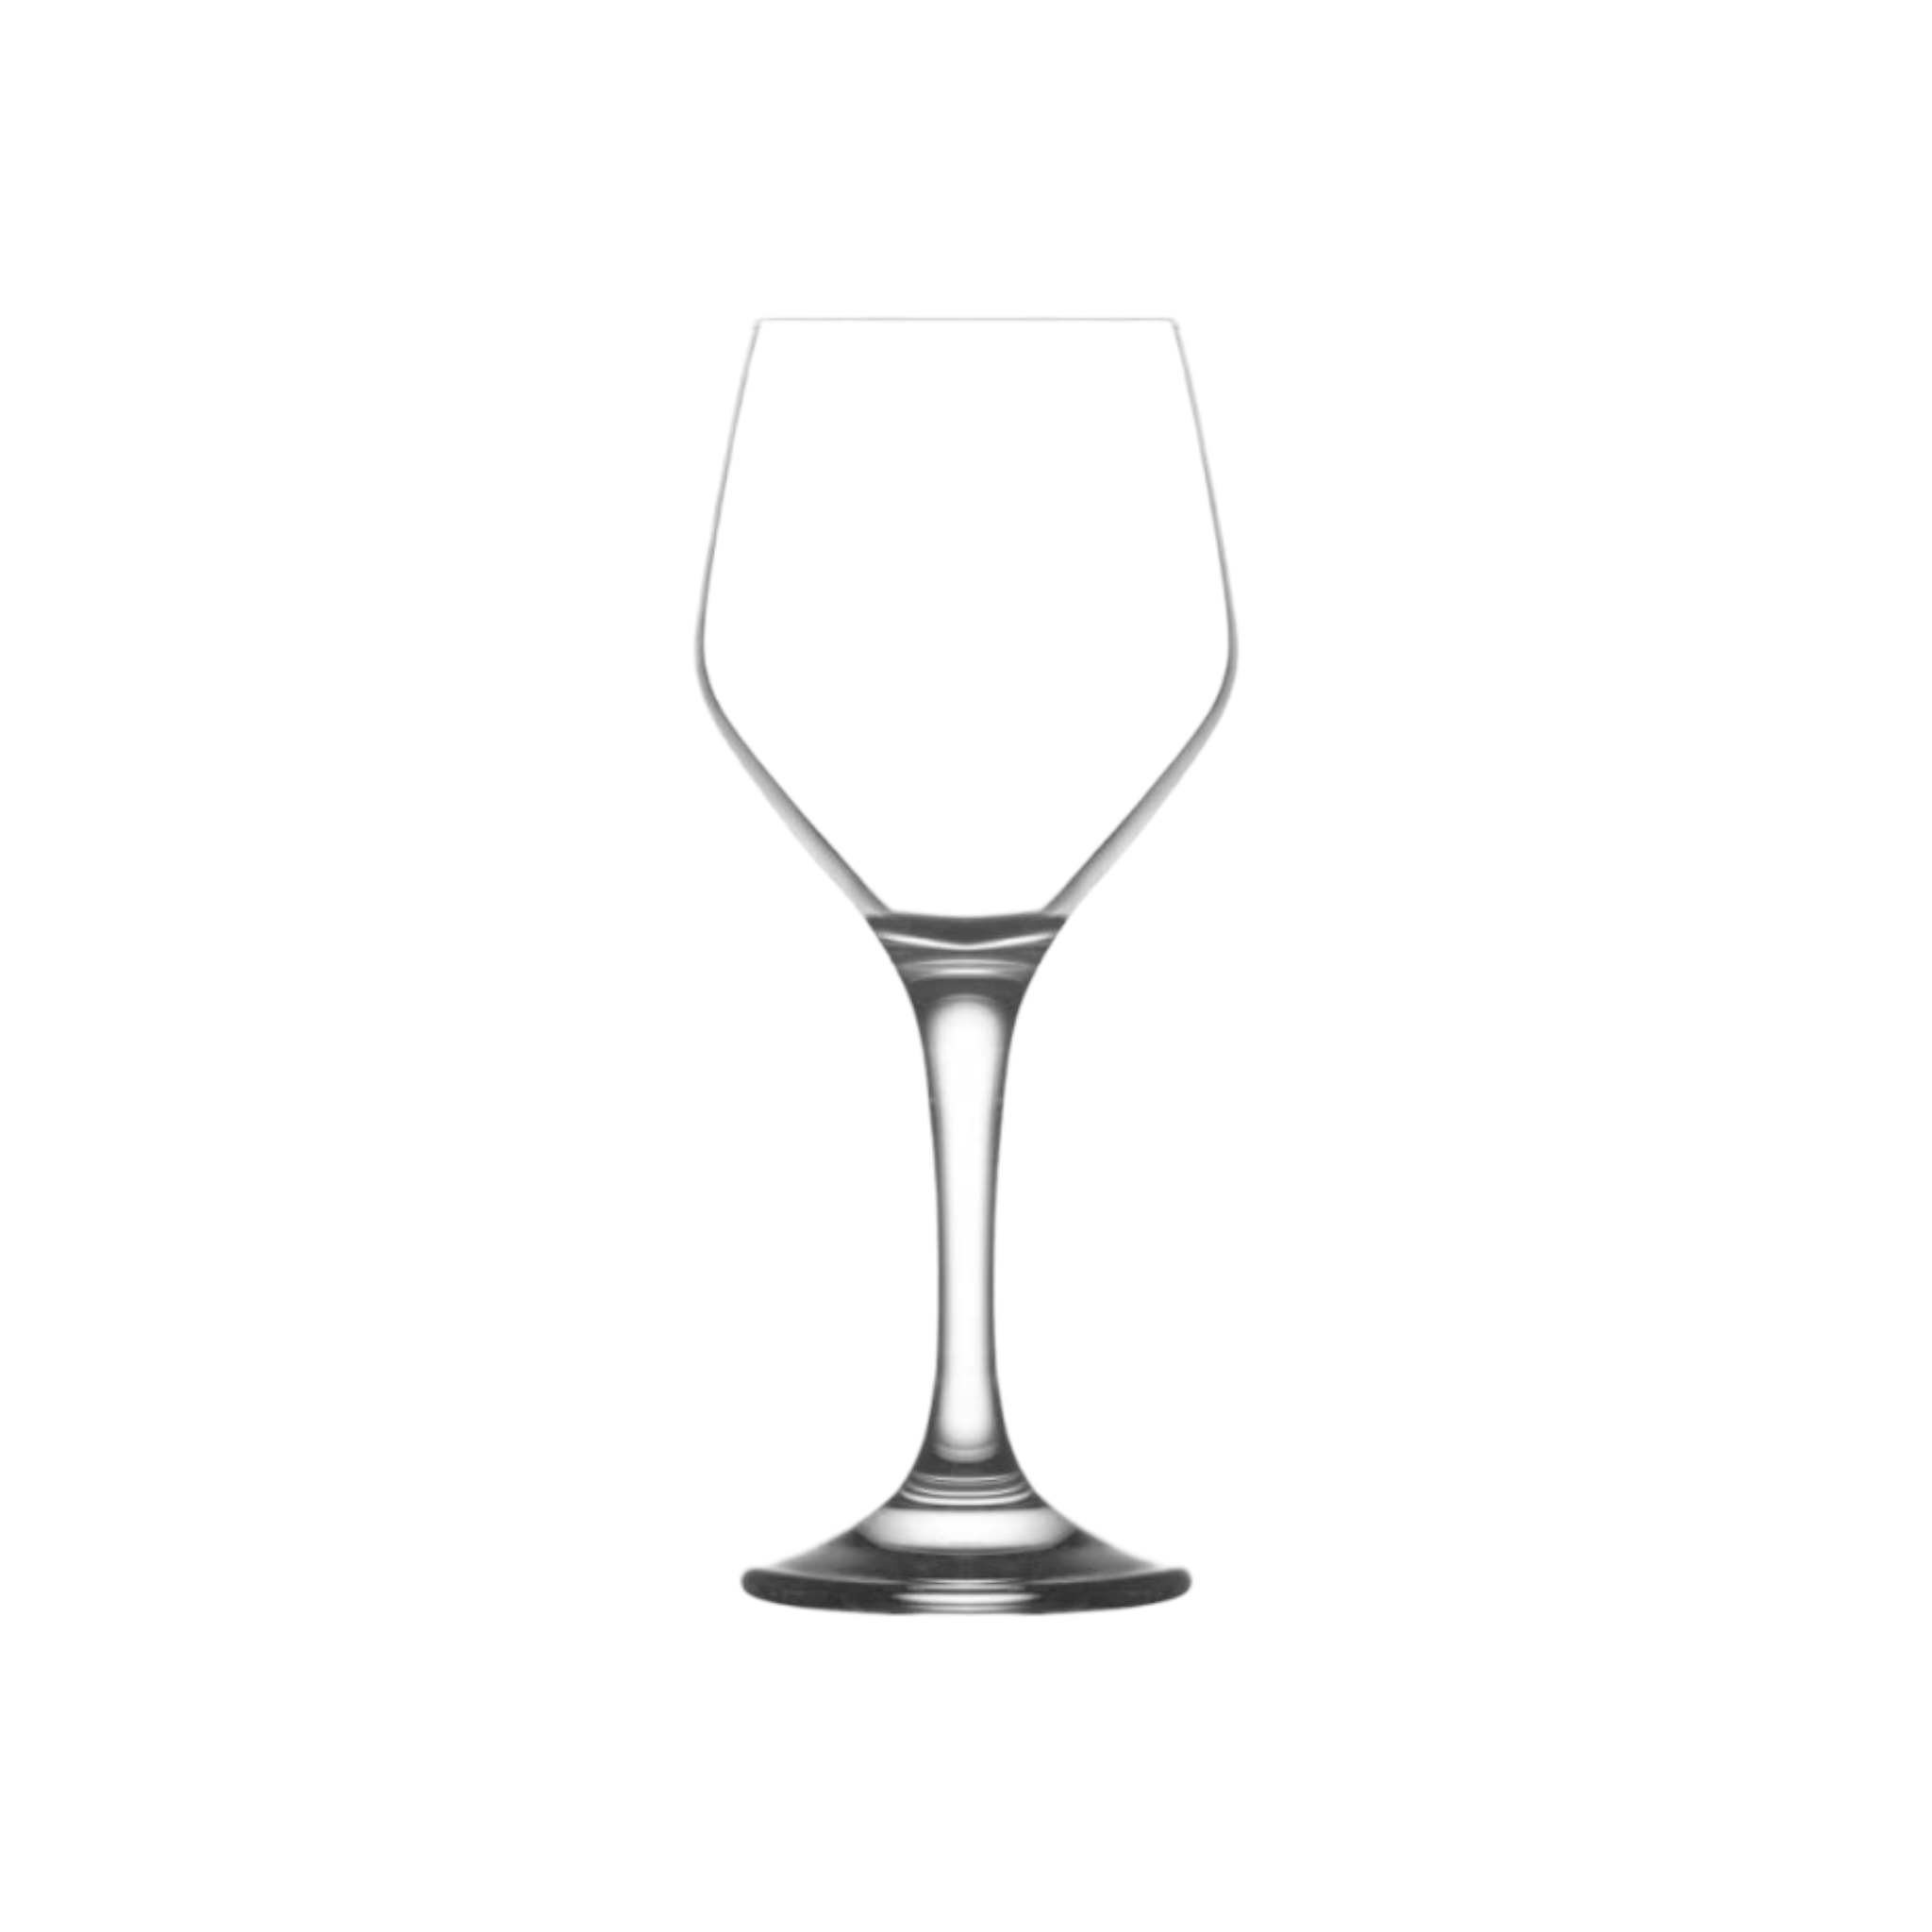 LAV Ella Glass Tumbler 260ml White Wine 6pack SGN1870